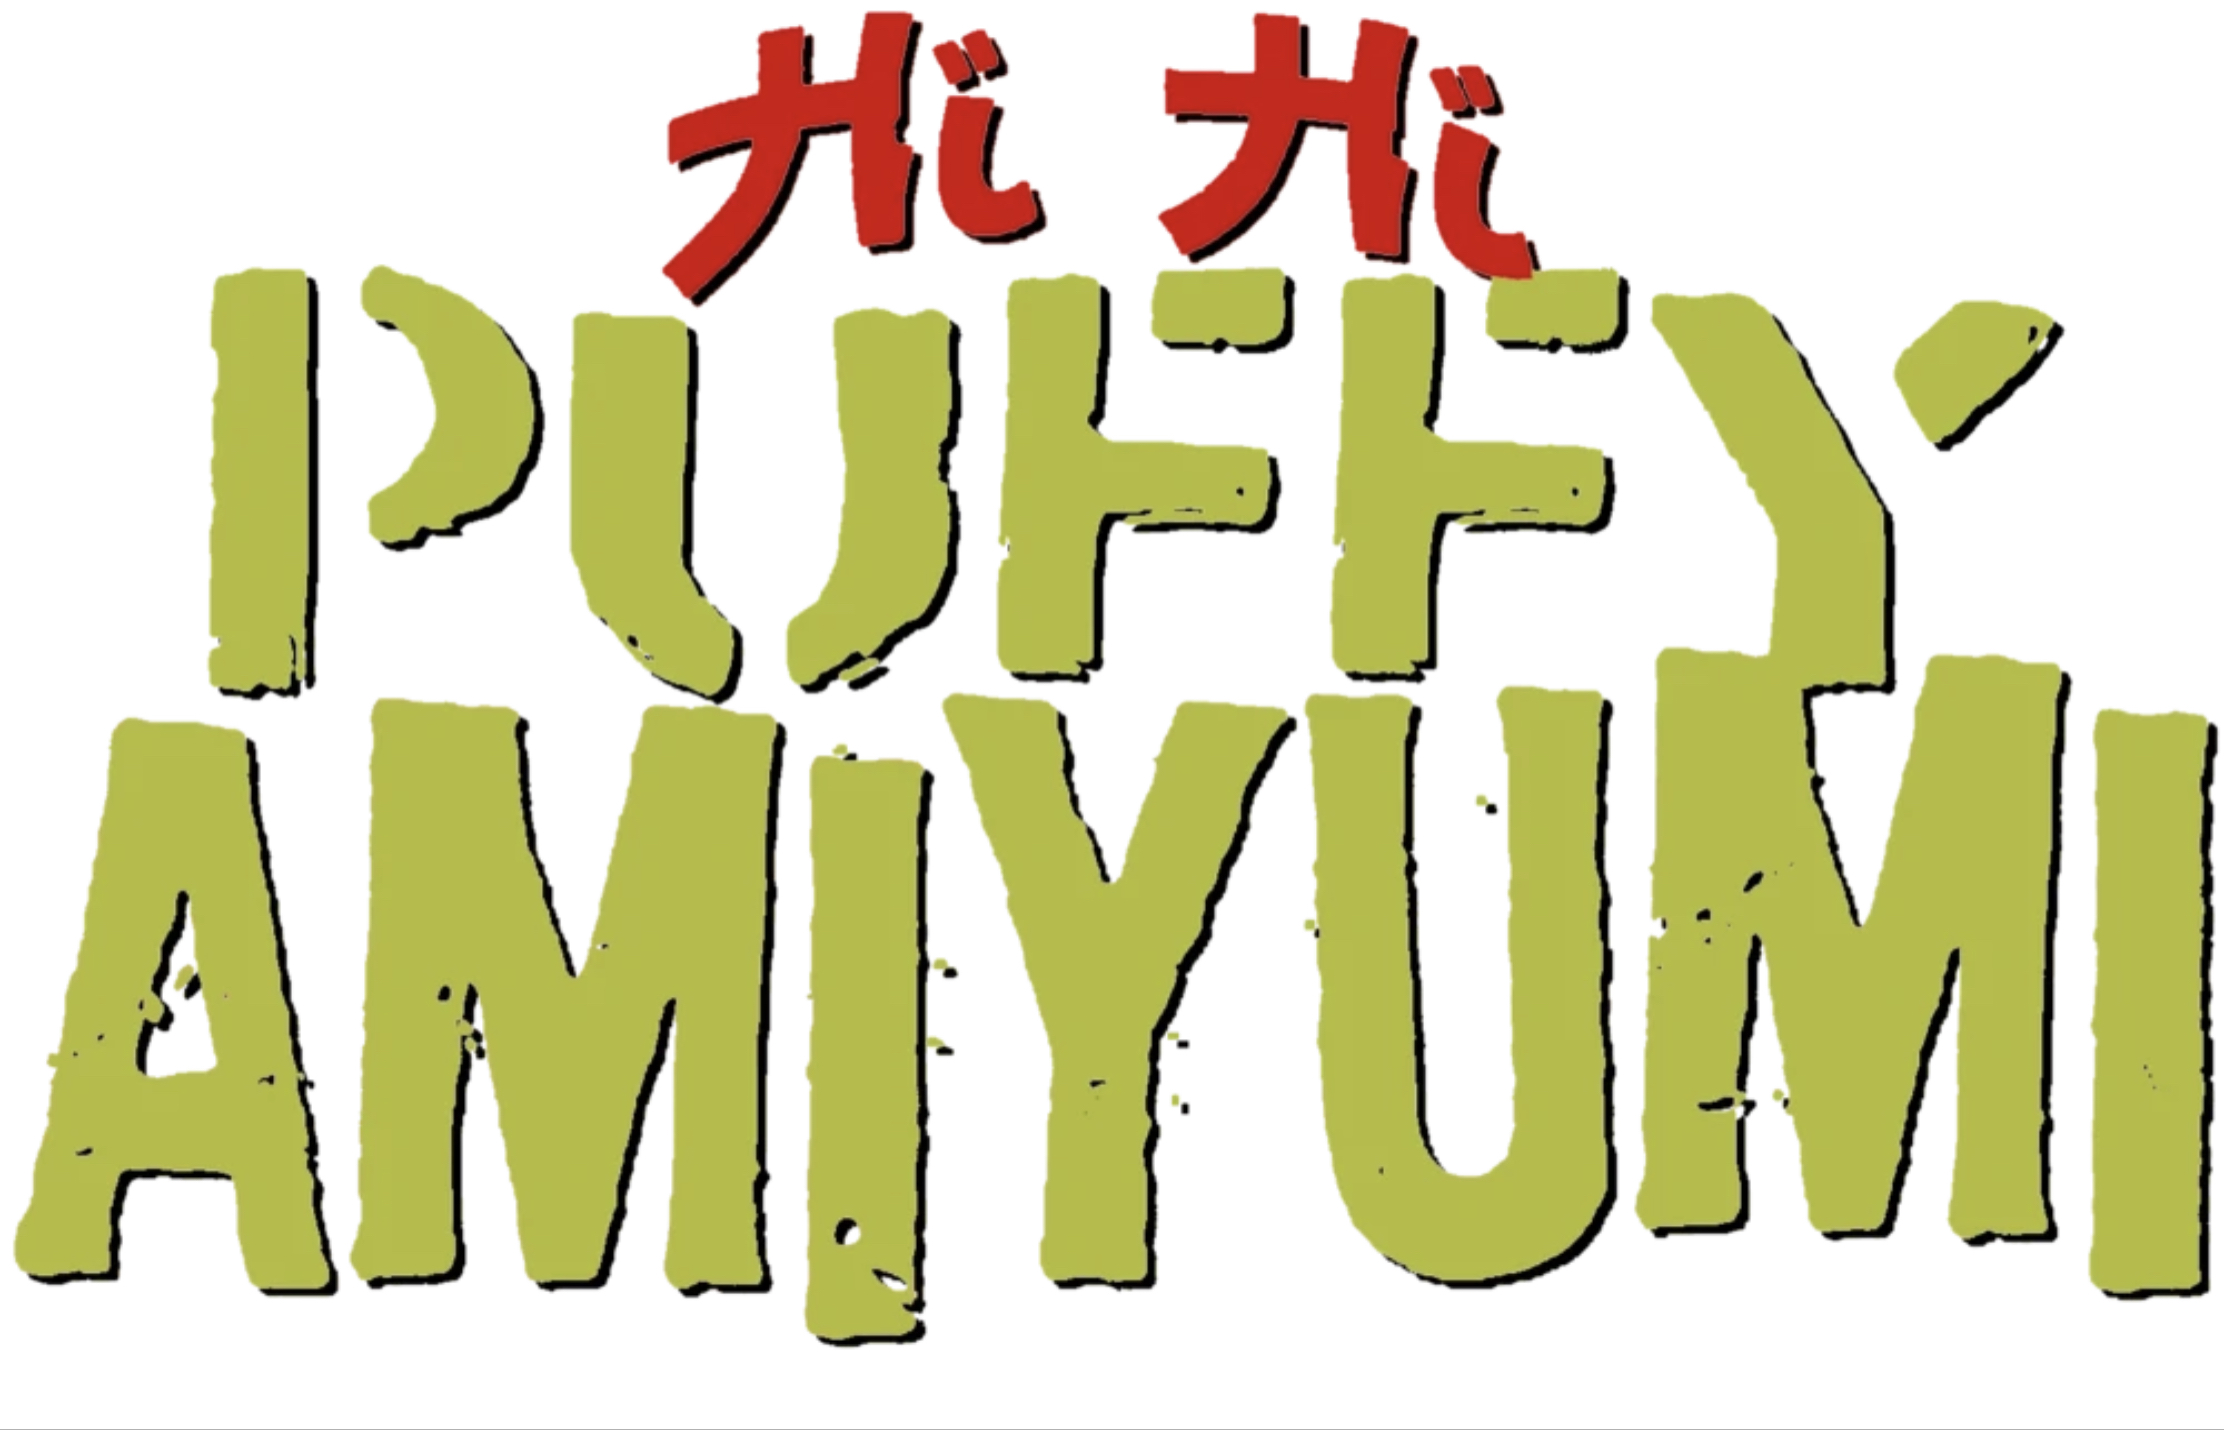 Pre-owned - Hi Hi Puffy AmiYumi - Let's Go! 